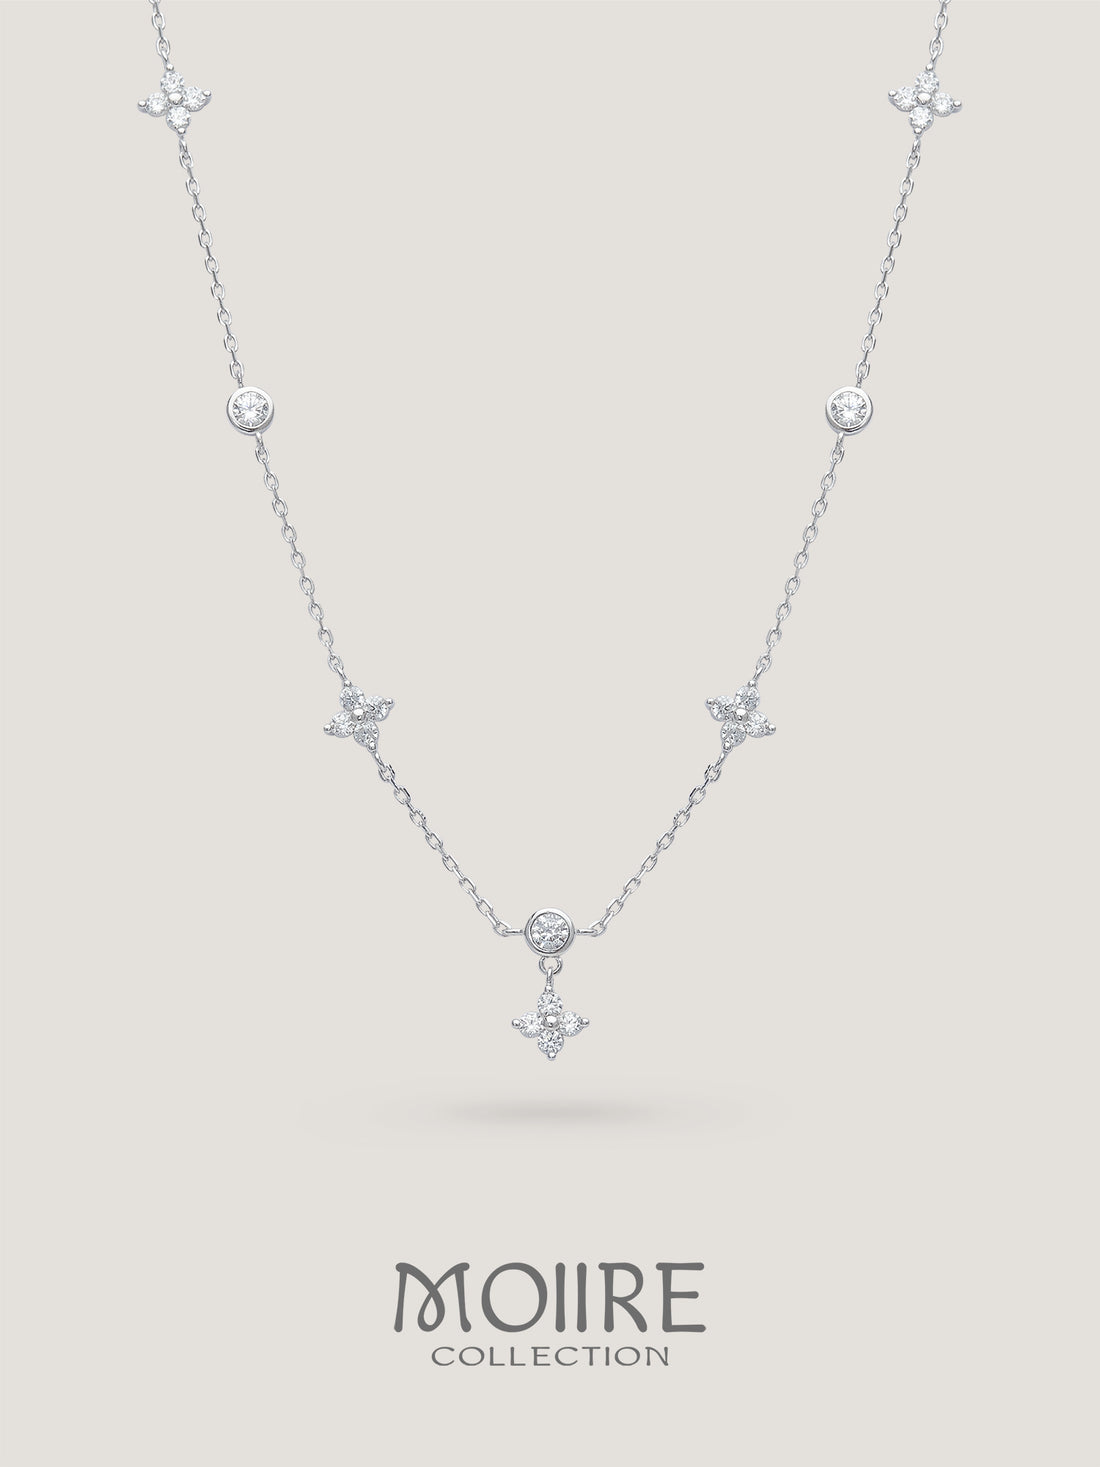 Moiire Jewelry | 淡淡釋懷